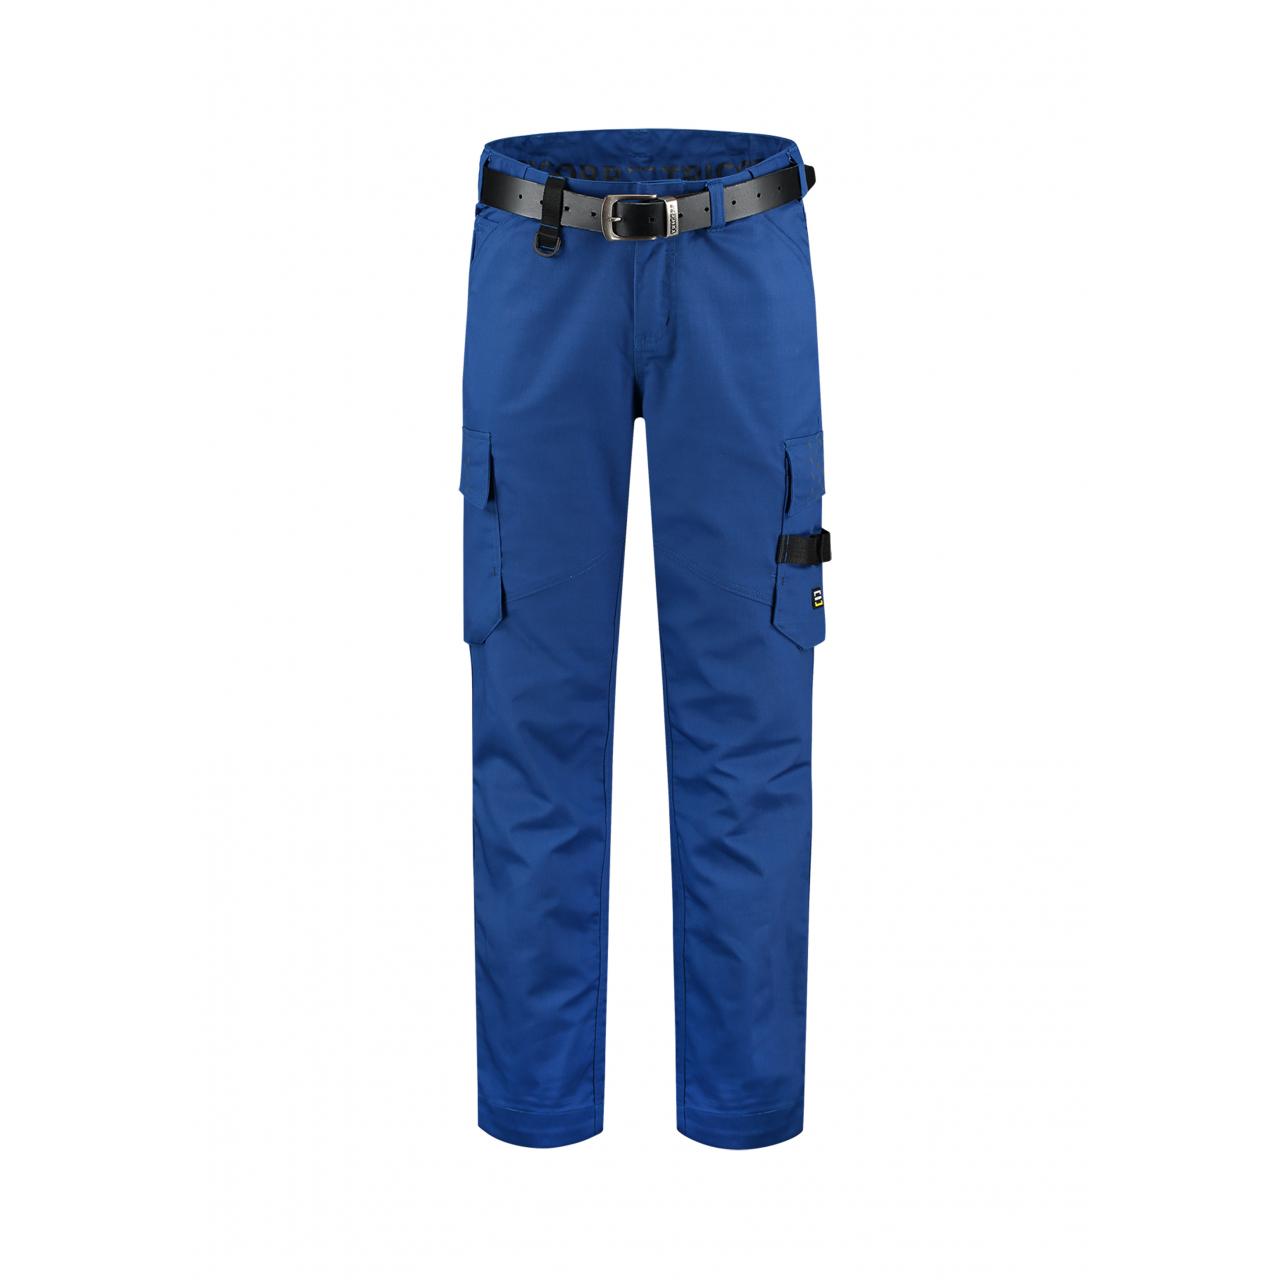 Pracovní kalhoty unisex Tricorp Work Pants Twill - modré, 45